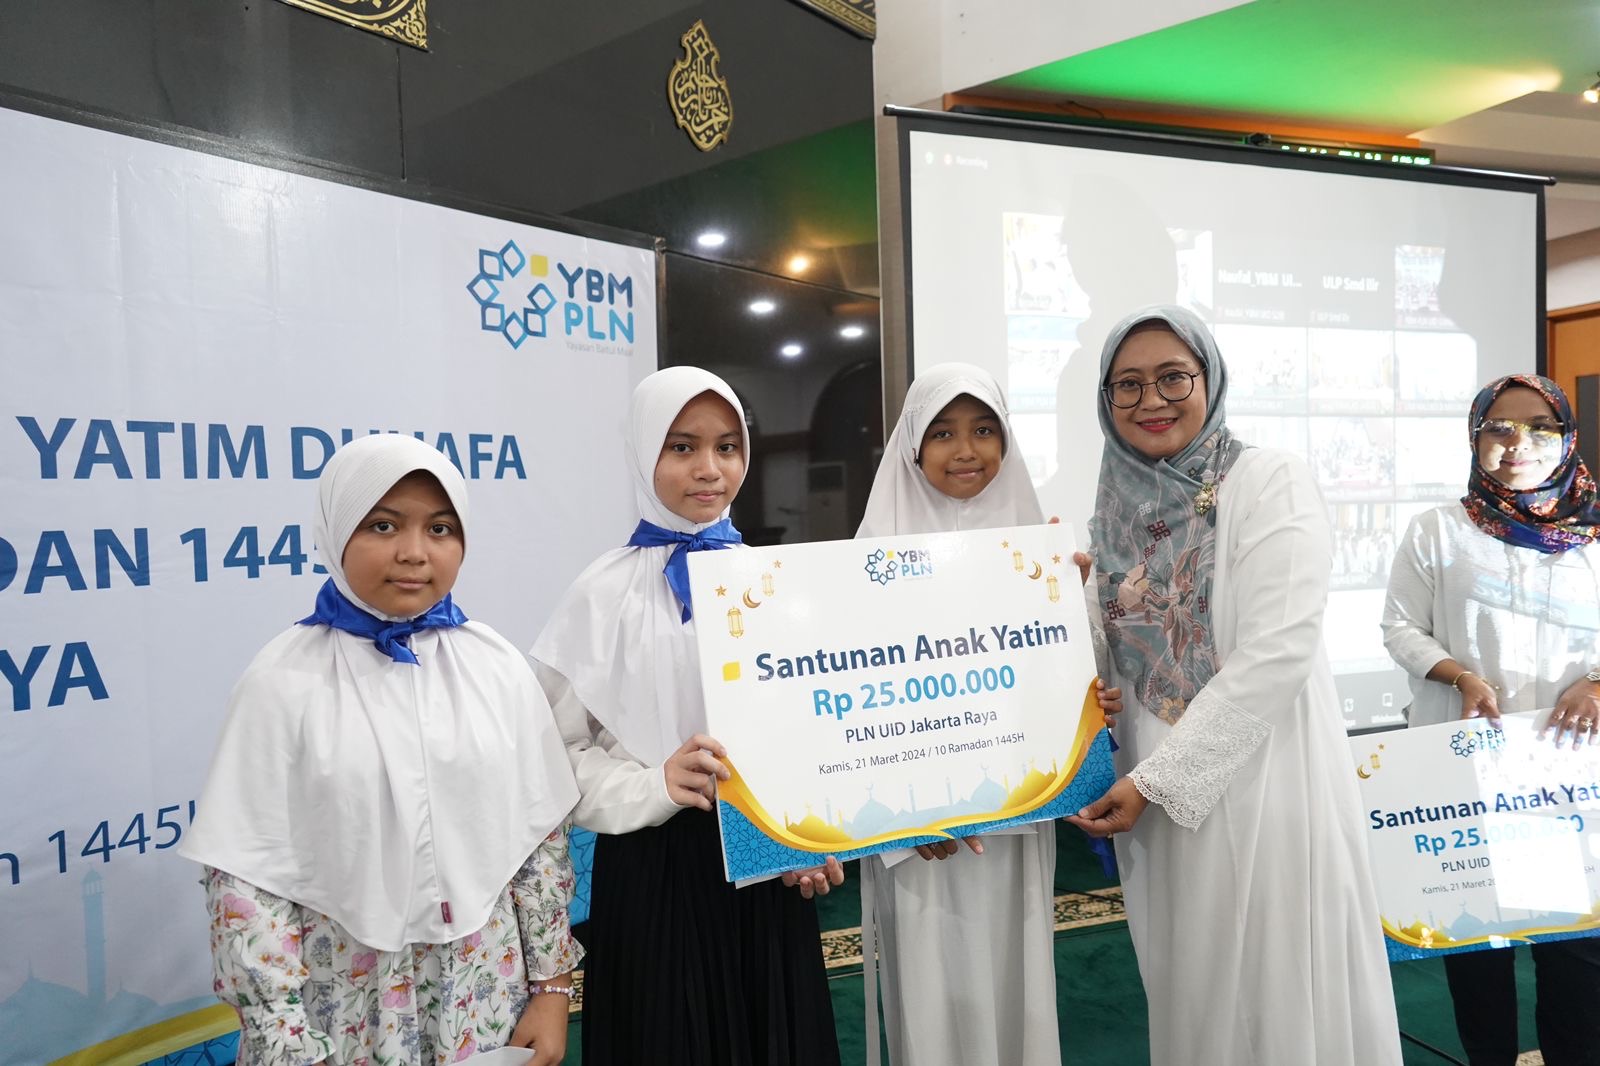 Bulan Penuh Berkah, YBM PLN UID Jakarta Raya Berbagi dengan Anak Yatim dan Dhuafa